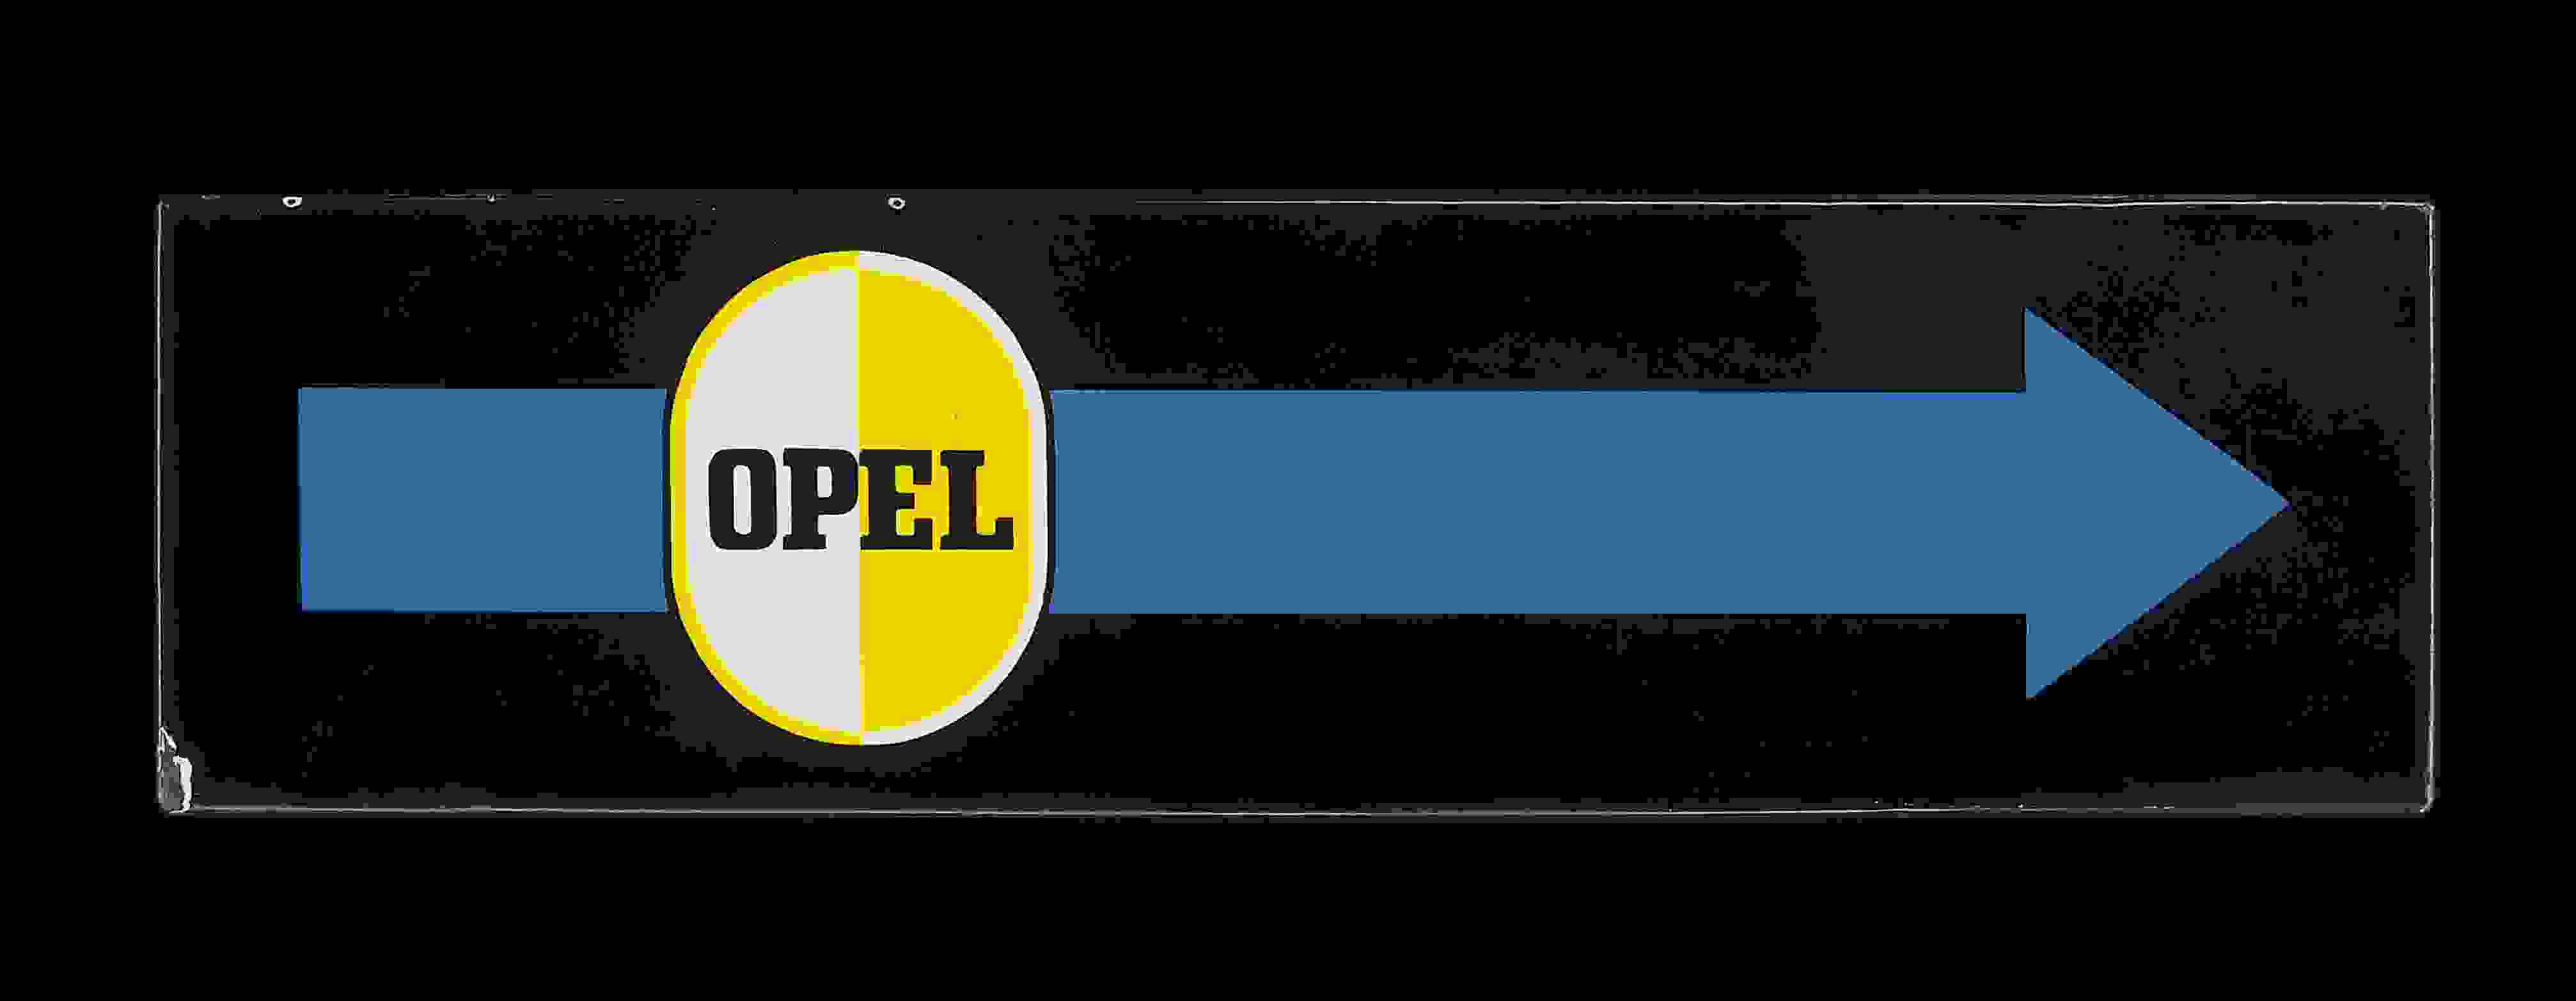 Opel Pfeil 